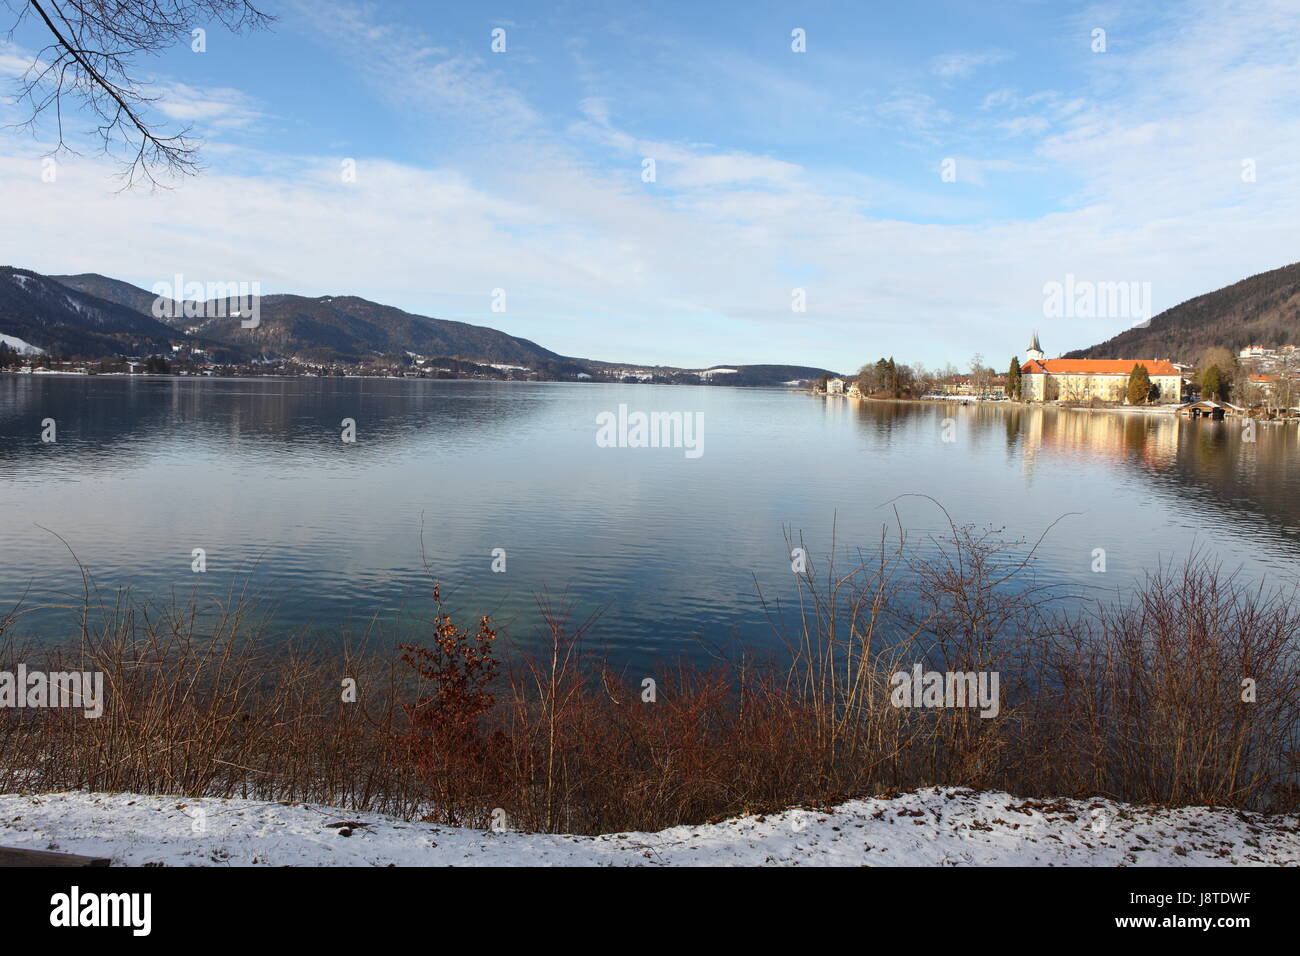 mountains, winter, bavaria, fresh water, lake, inland water, water, mountain, Stock Photo